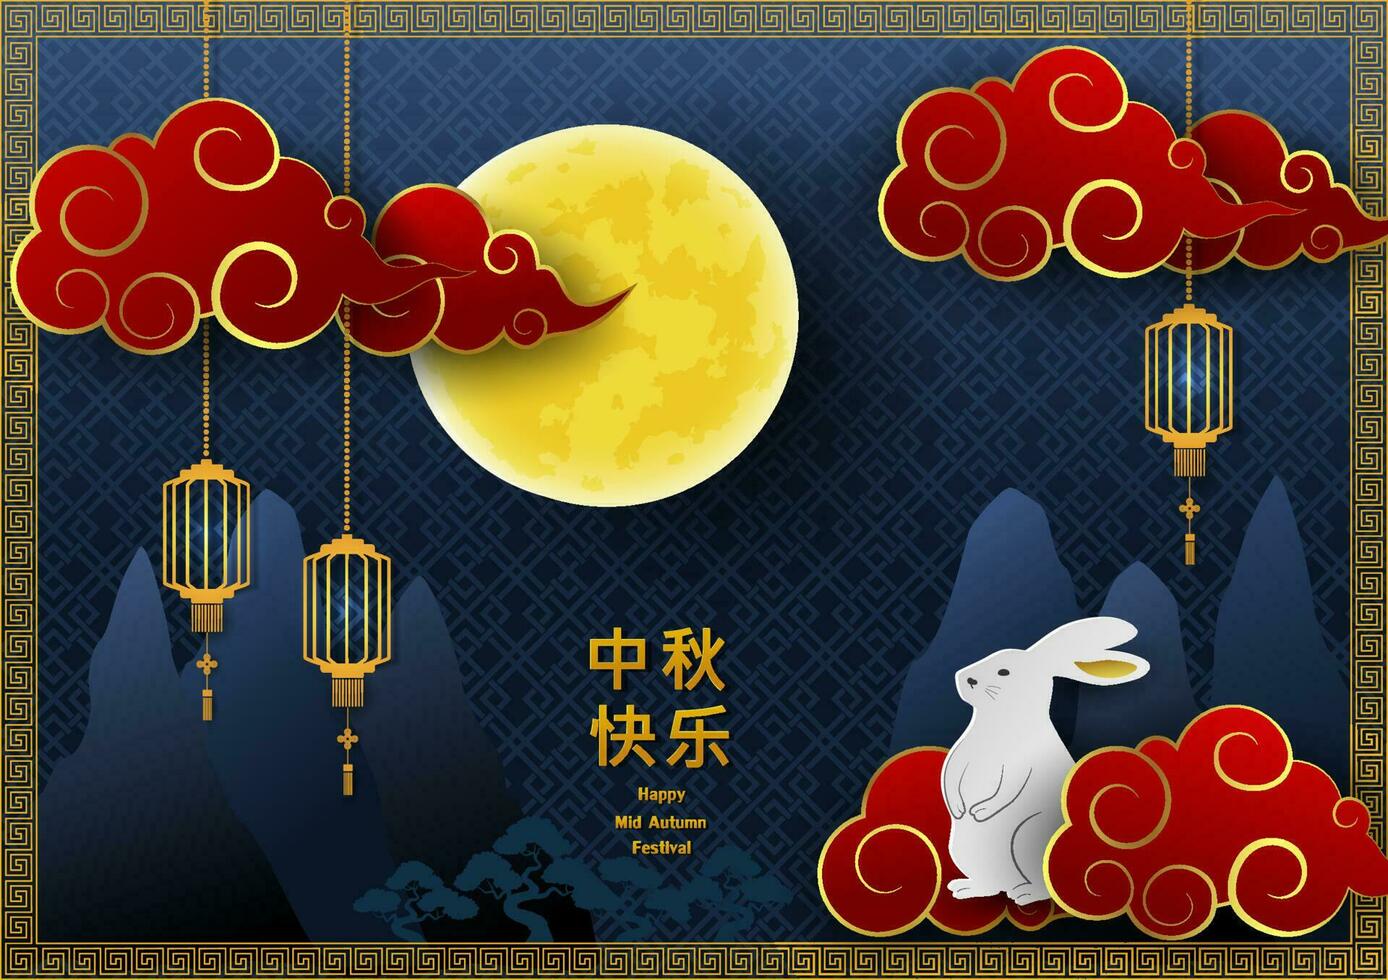 medio otoño festival o Luna festival saludo tarjeta, asiático elementos con lleno Luna en azul noche fondo, chino traducir media medio otoño festival vector